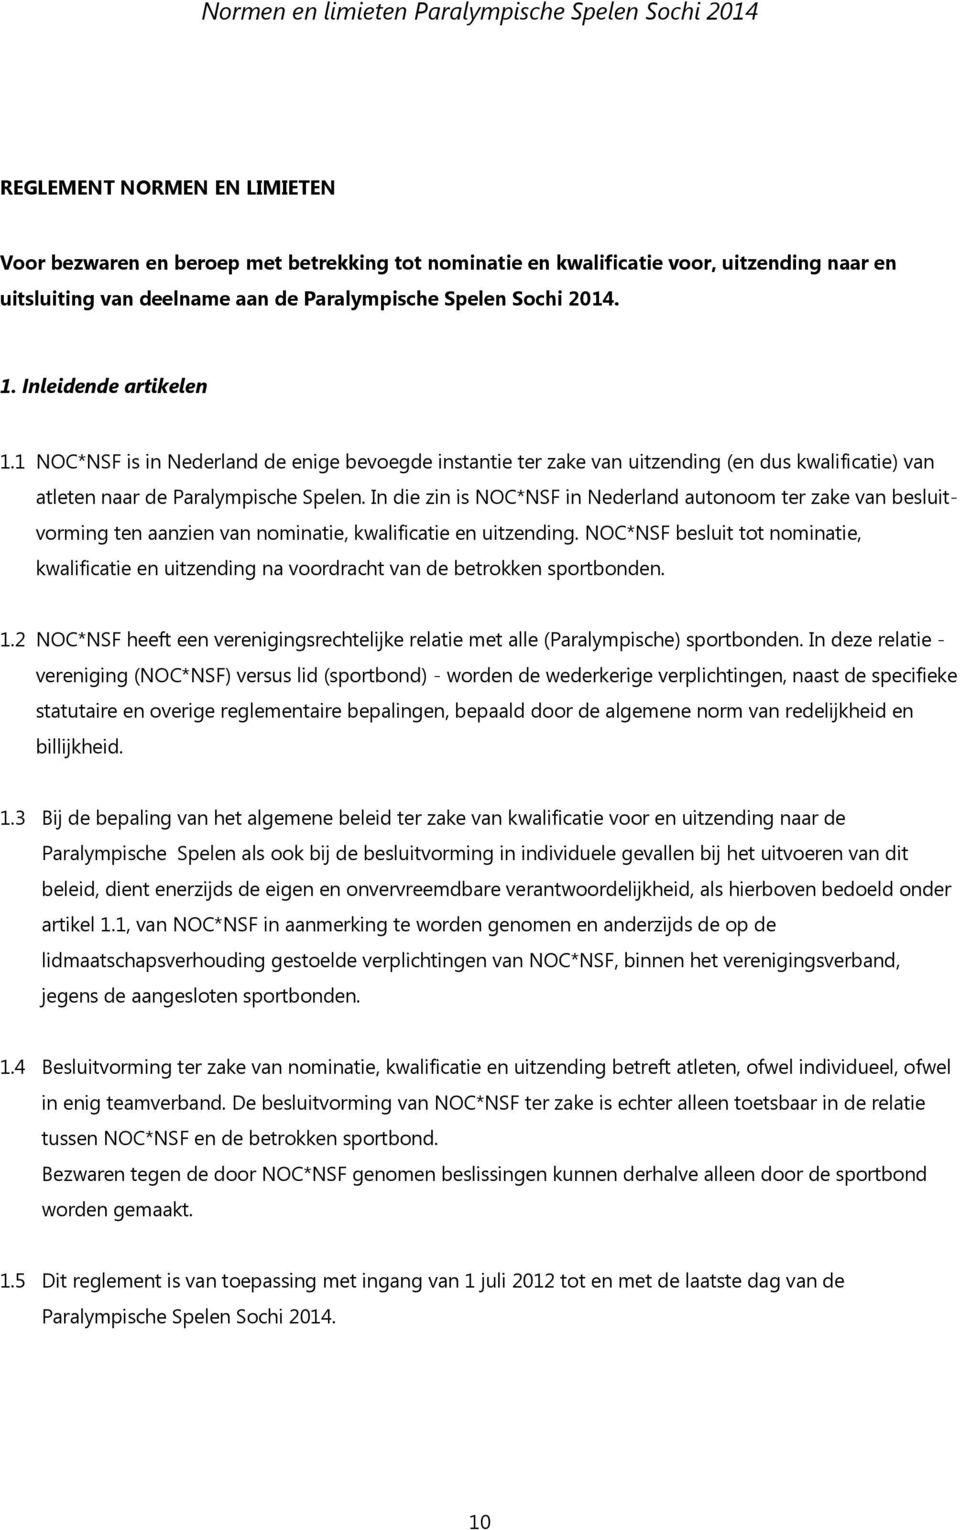 In die zin is NOC*NSF in Nederland autonoom ter zake van besluitvorming ten aanzien van nominatie, kwalificatie en uitzending.